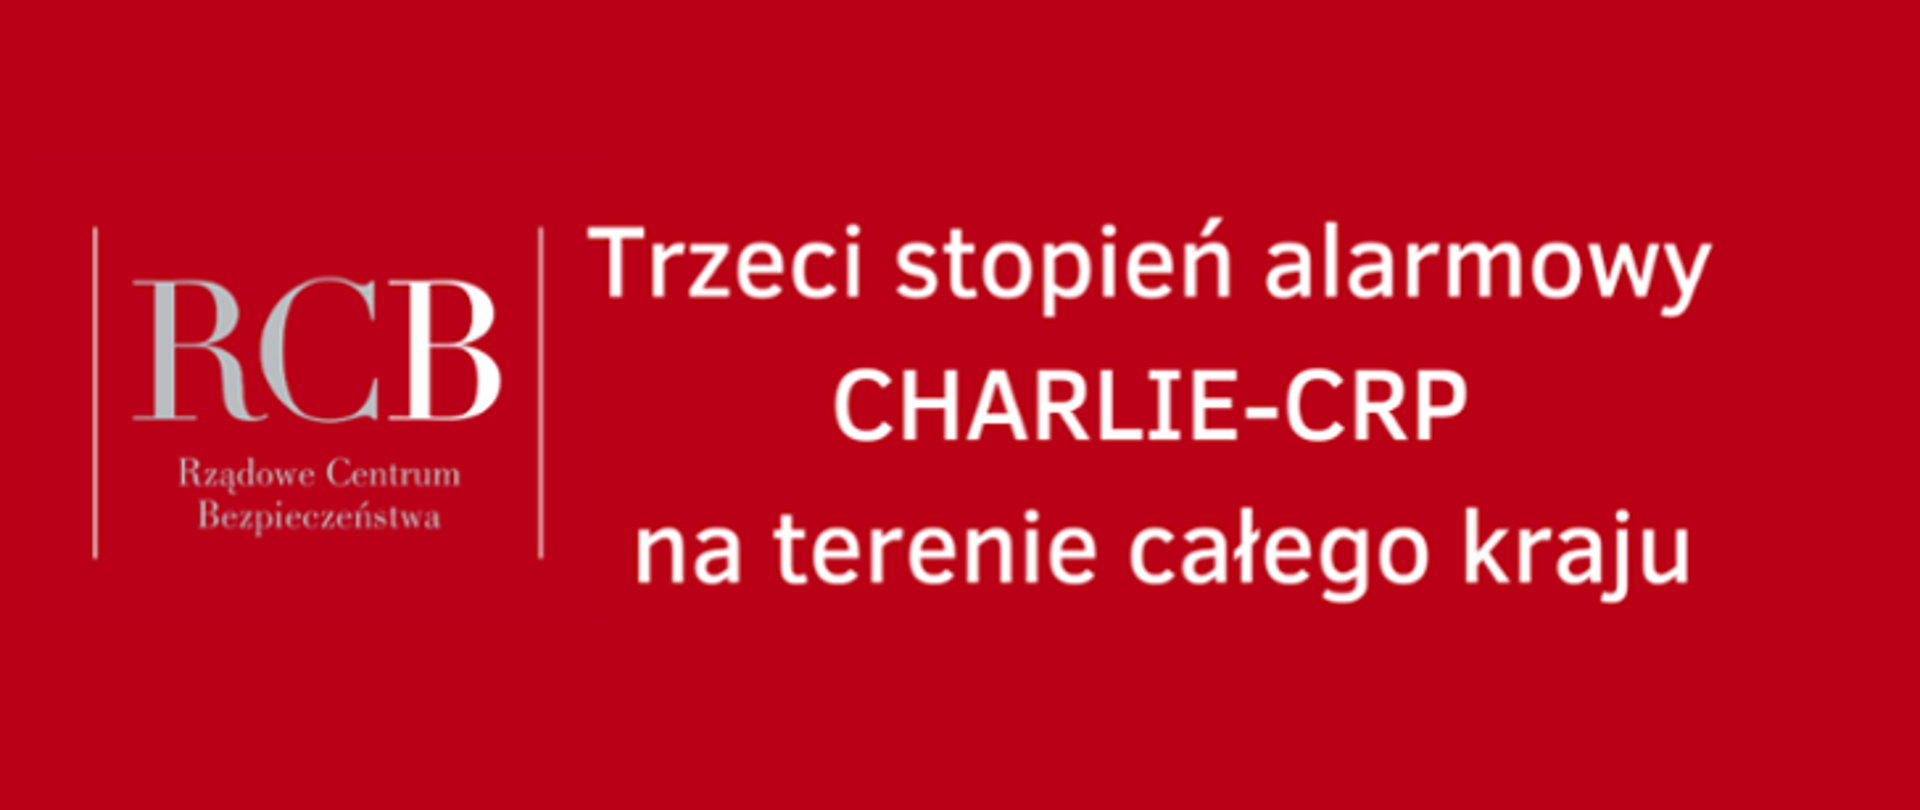 ilustracja czerwona z białym napisem trzeci stopień alarmowy CHARLIE_CRP na terenie całego kraju